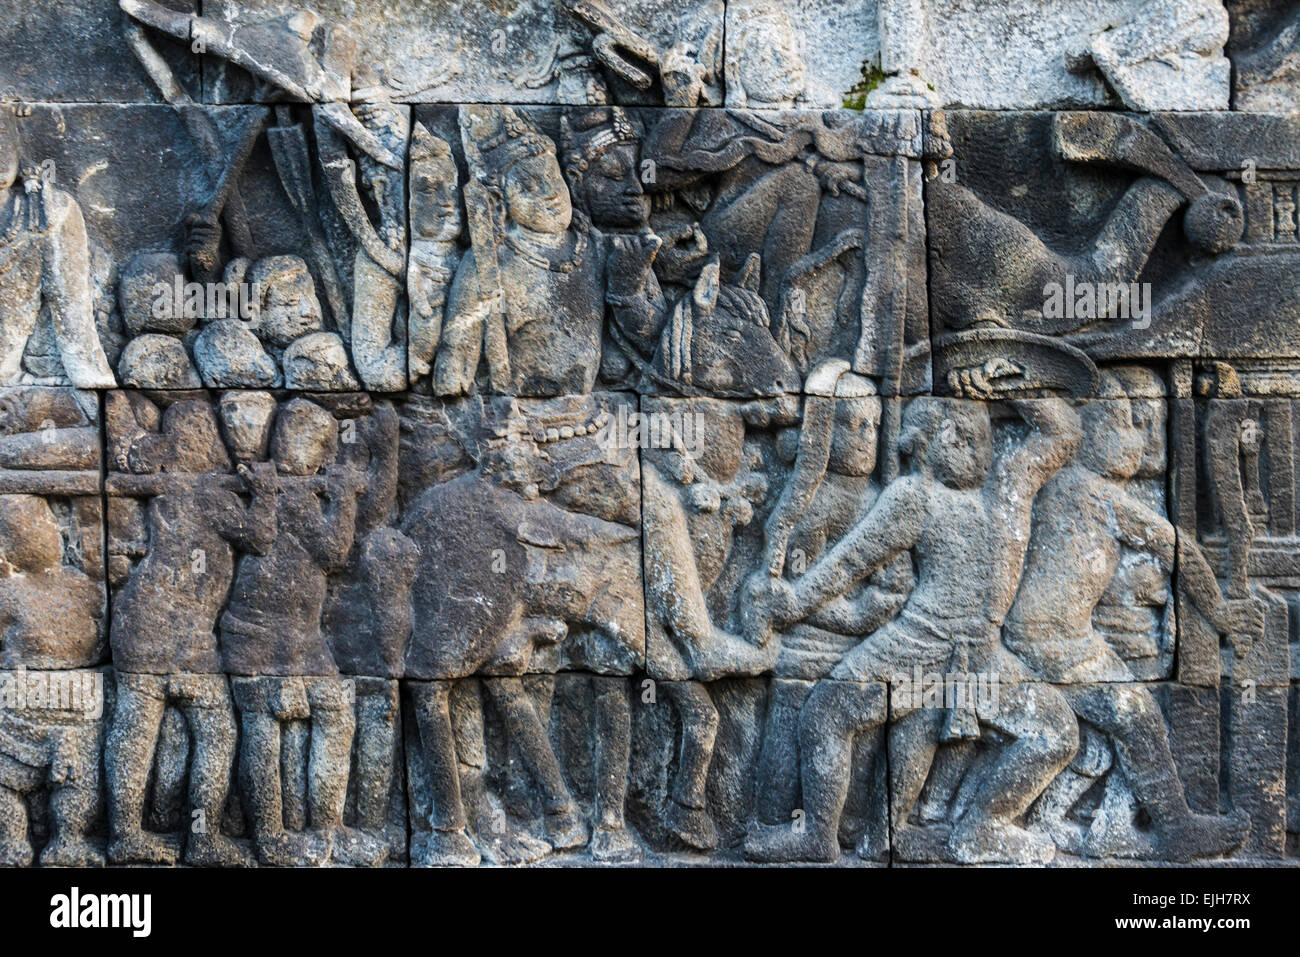 La sculpture sur pierre à Borobudur, UNESCO World Heritage site, Magelang,Central Java, Indonésie Banque D'Images